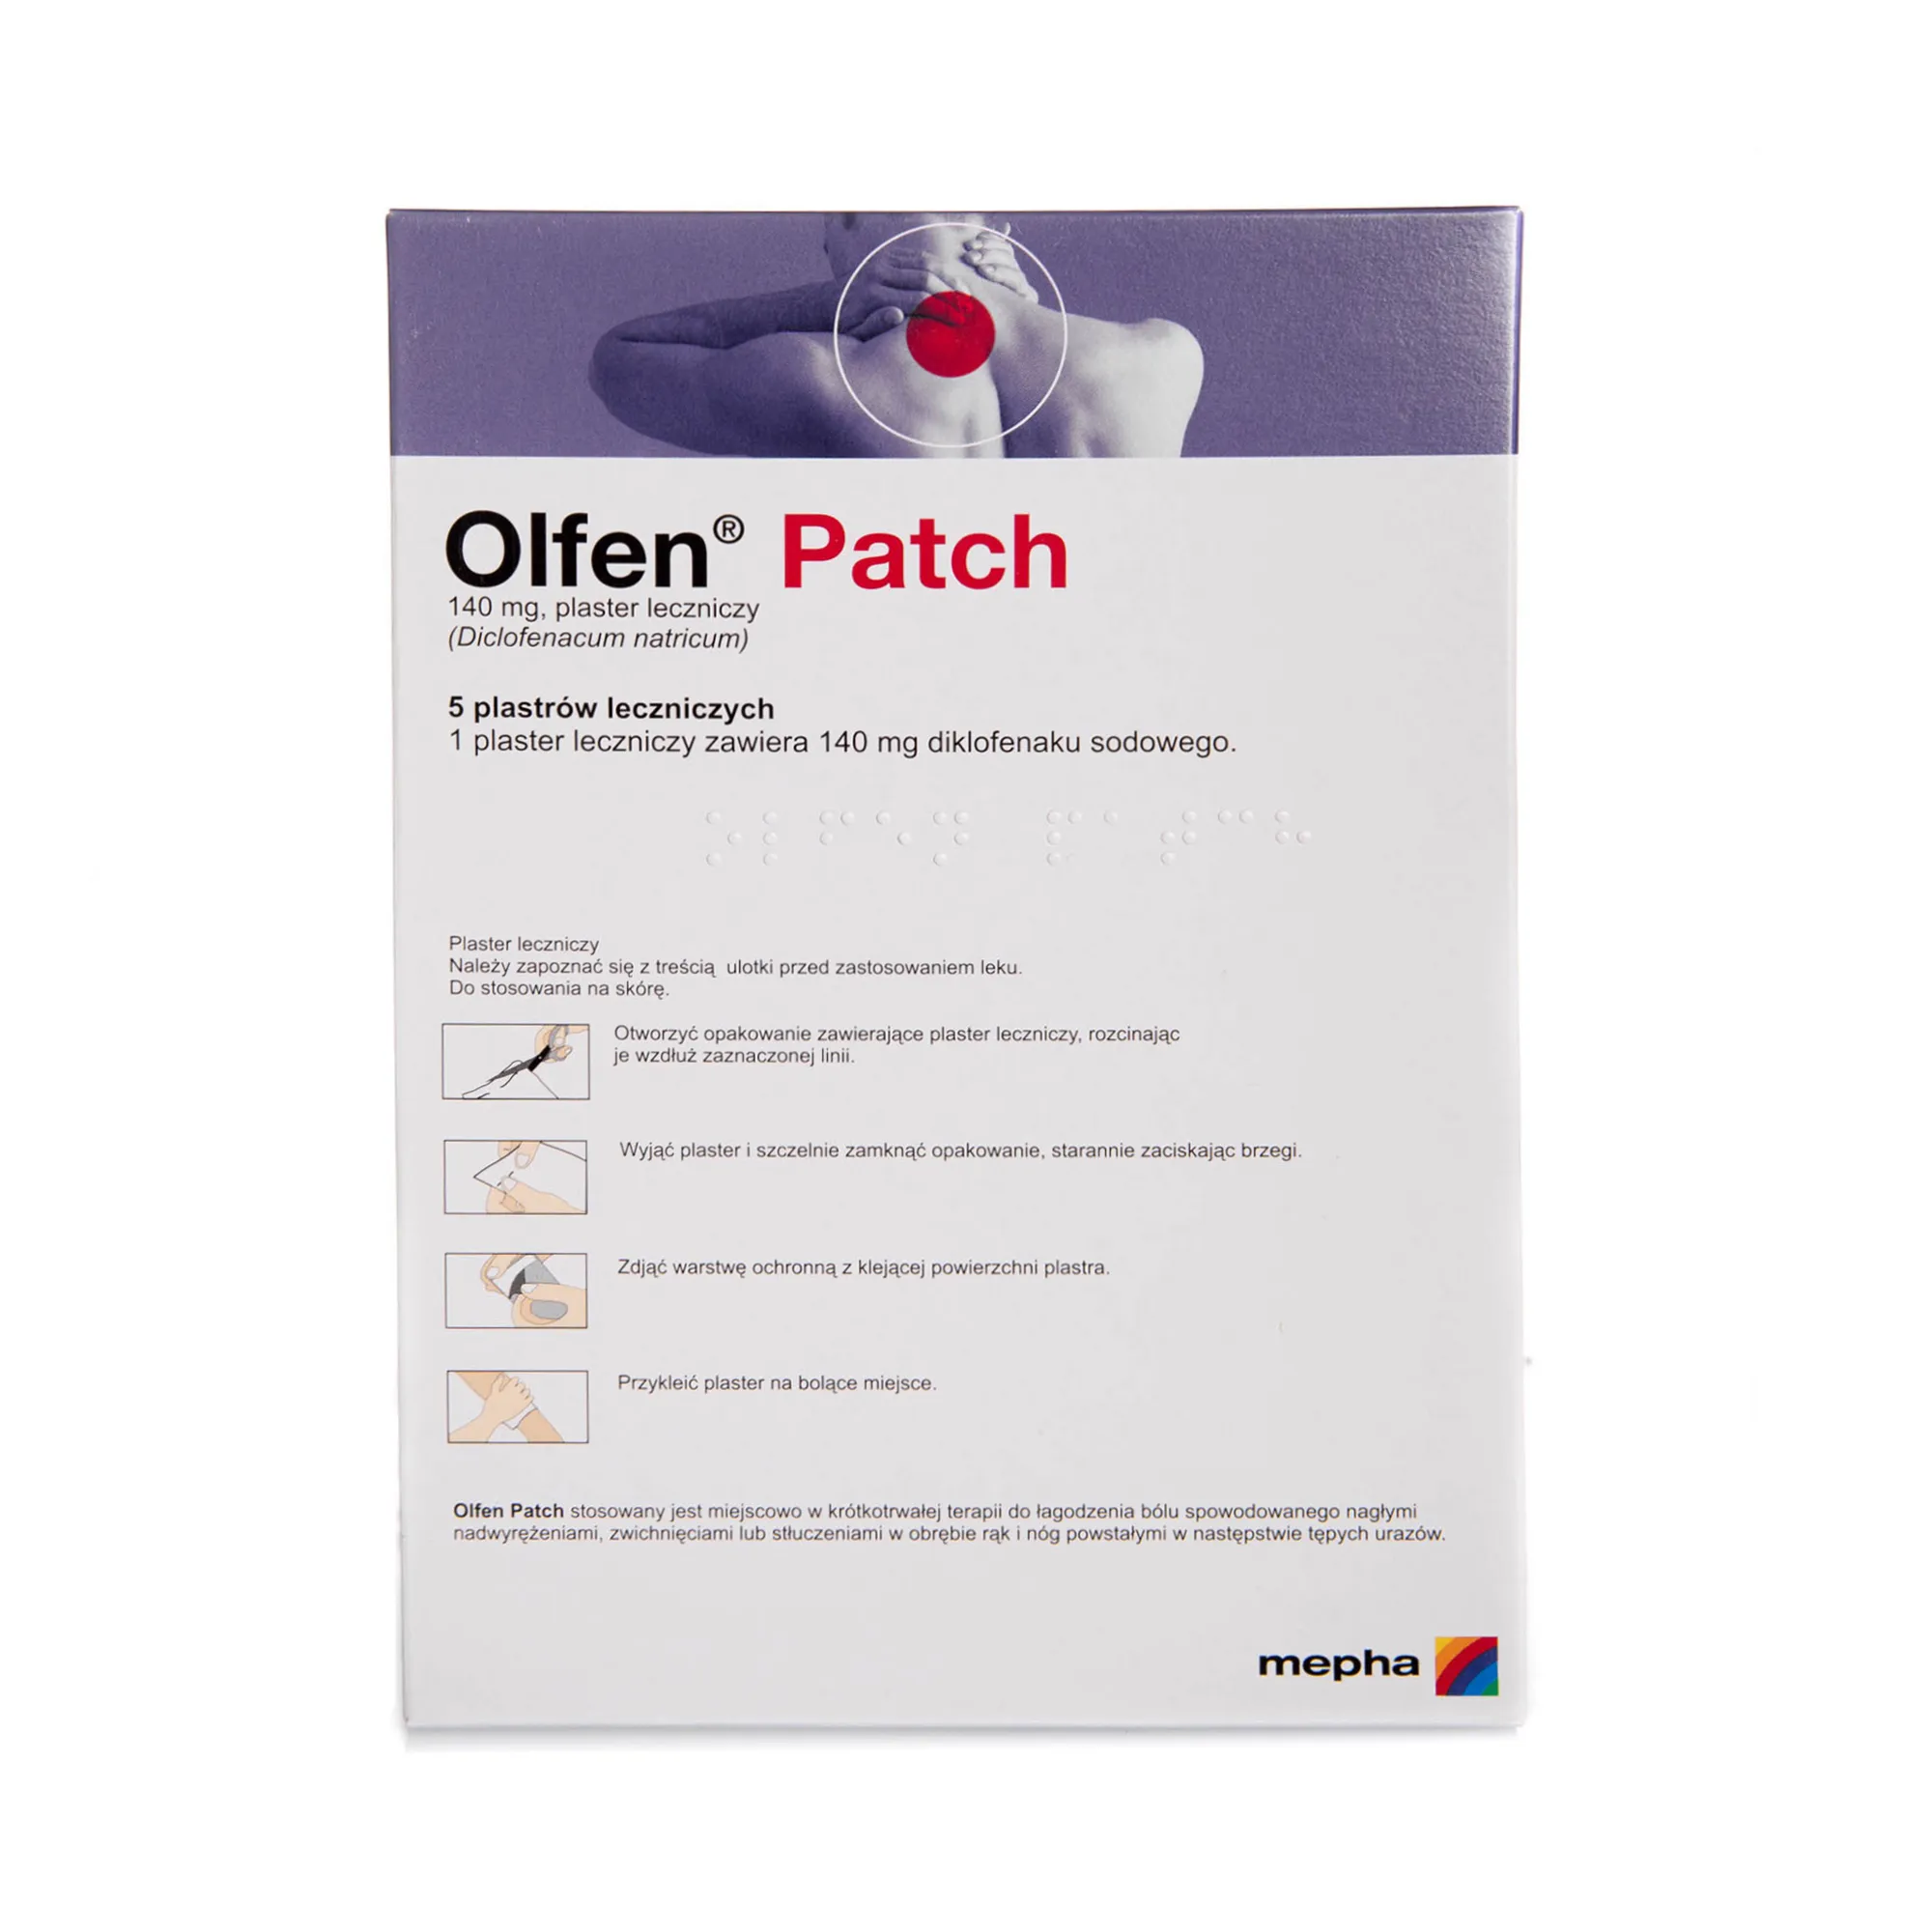 Olfen Patch 140 mg, plaster leczniczy, 5 plastrów